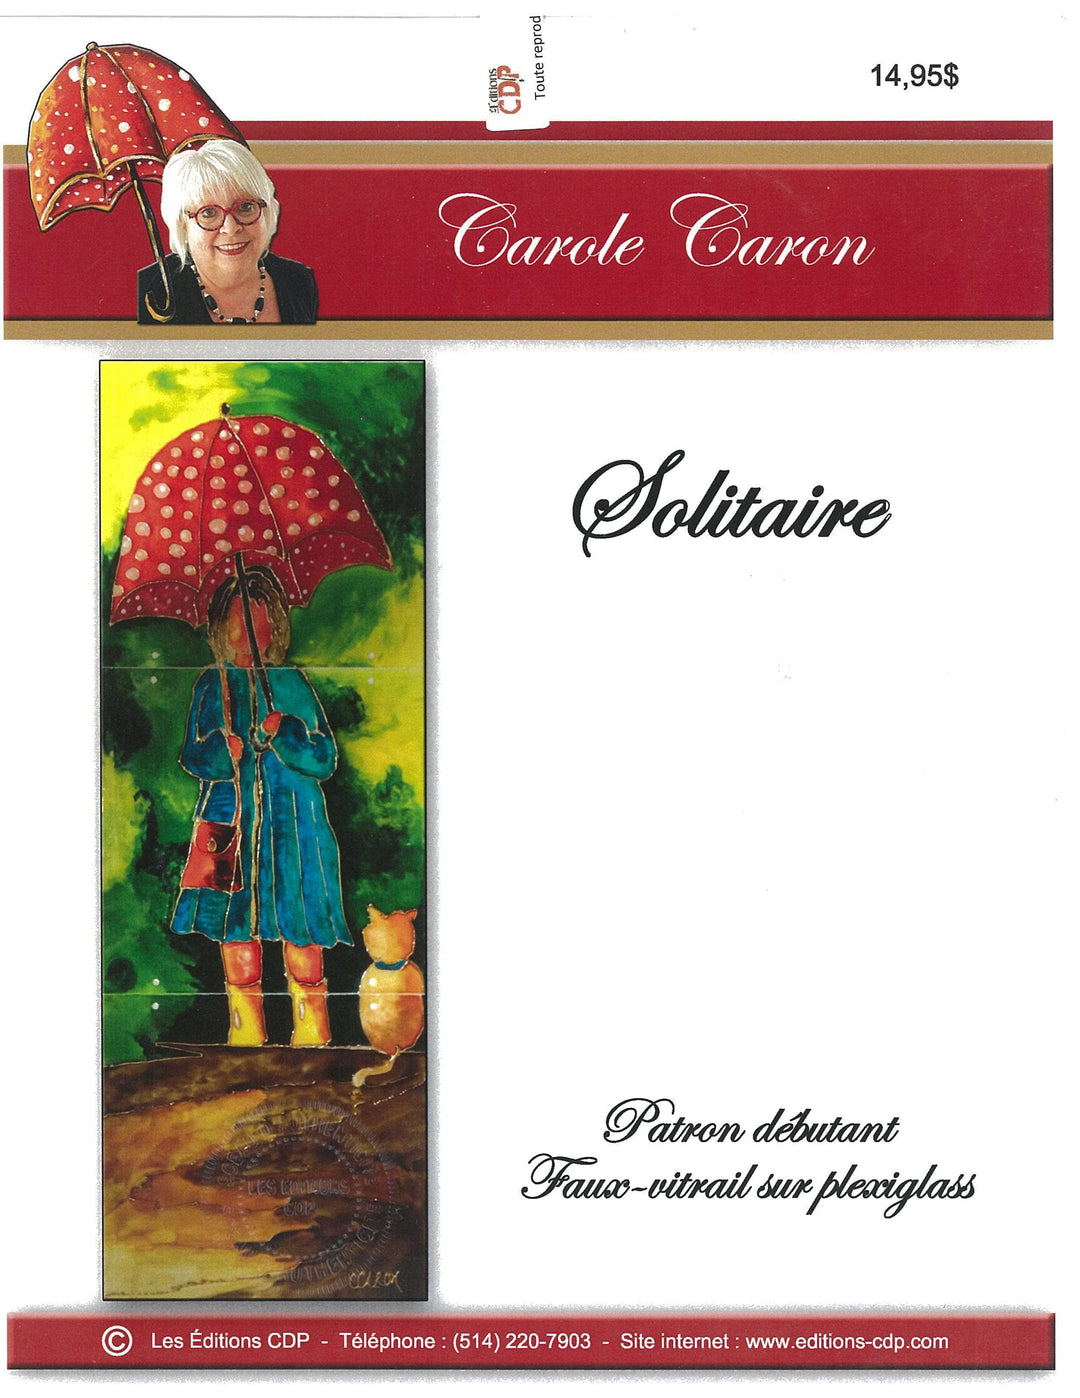 solitaire/C.Caron